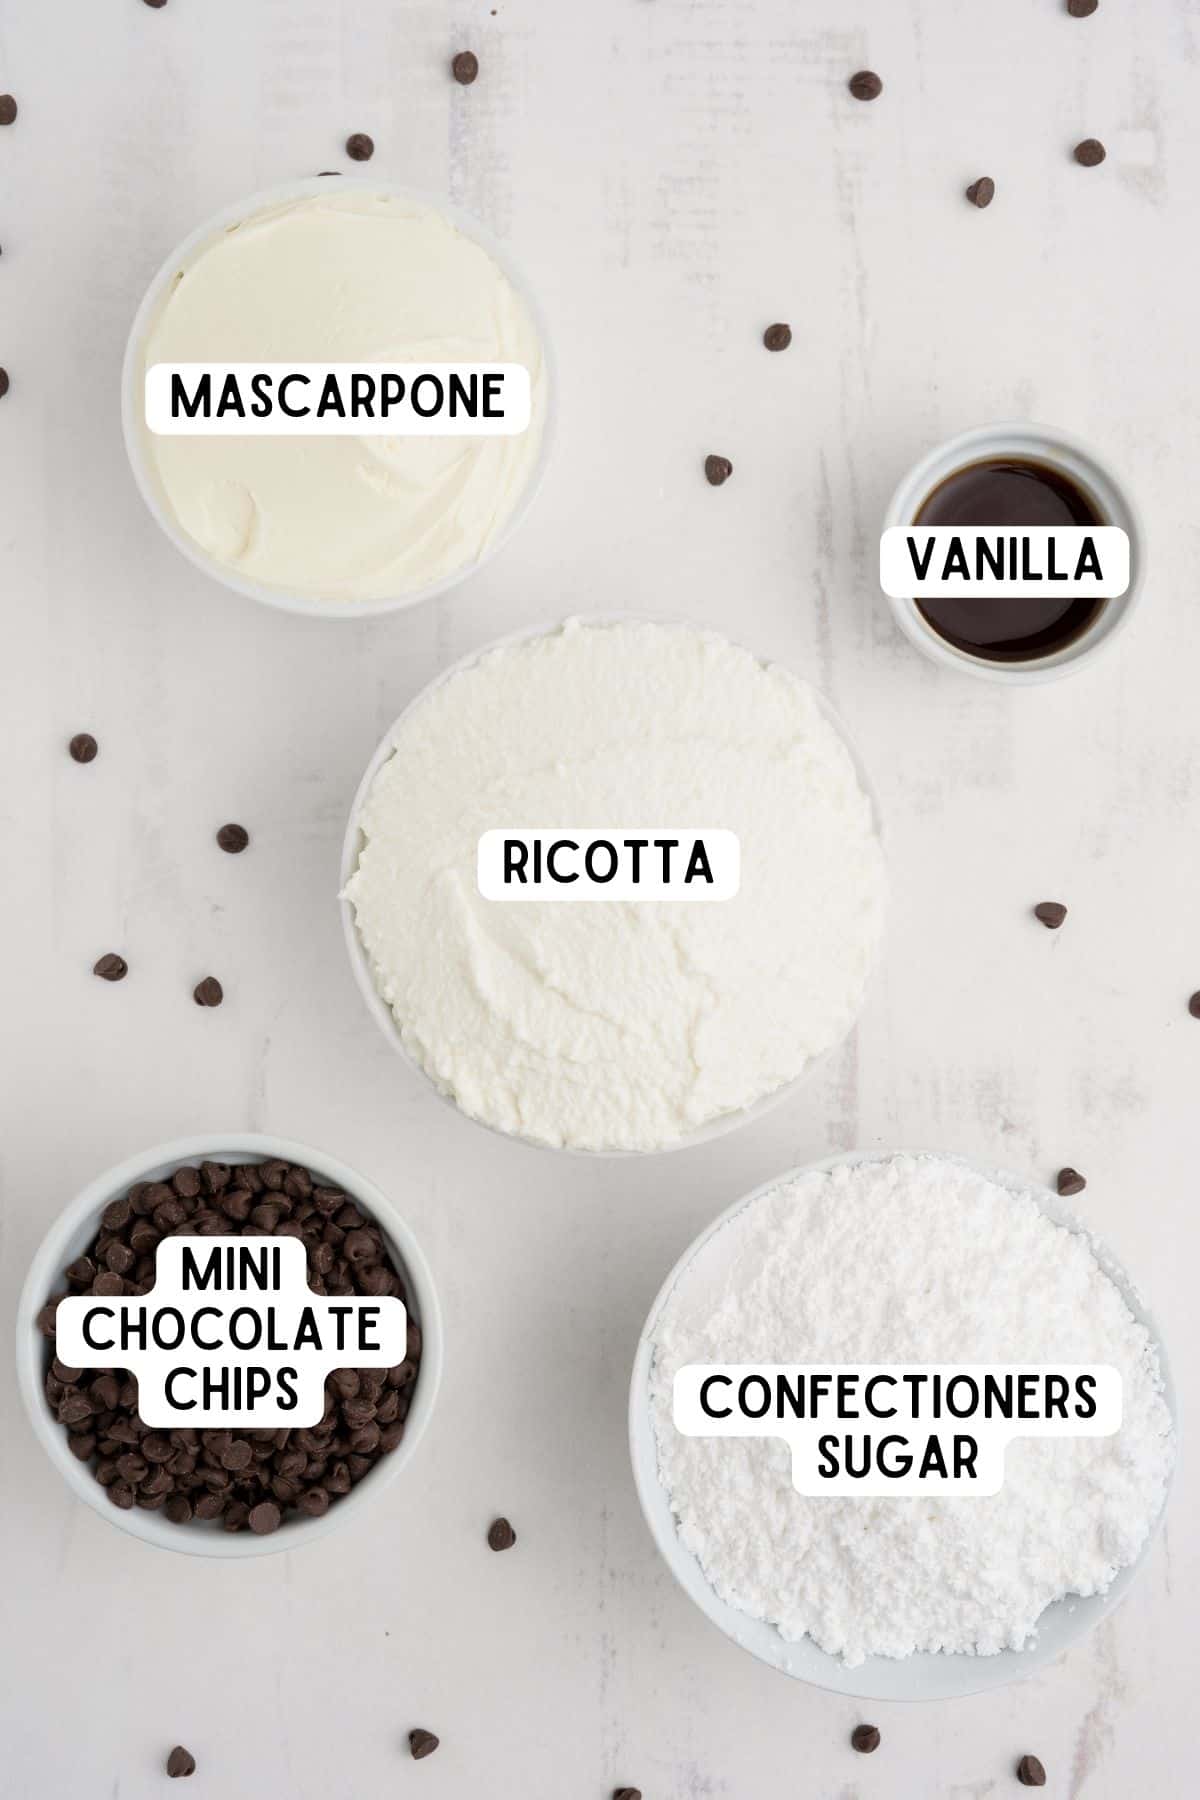 Mascarpone, ricotta, vanilla, mini chocolate chips, and confectioner's sugar in bowls.